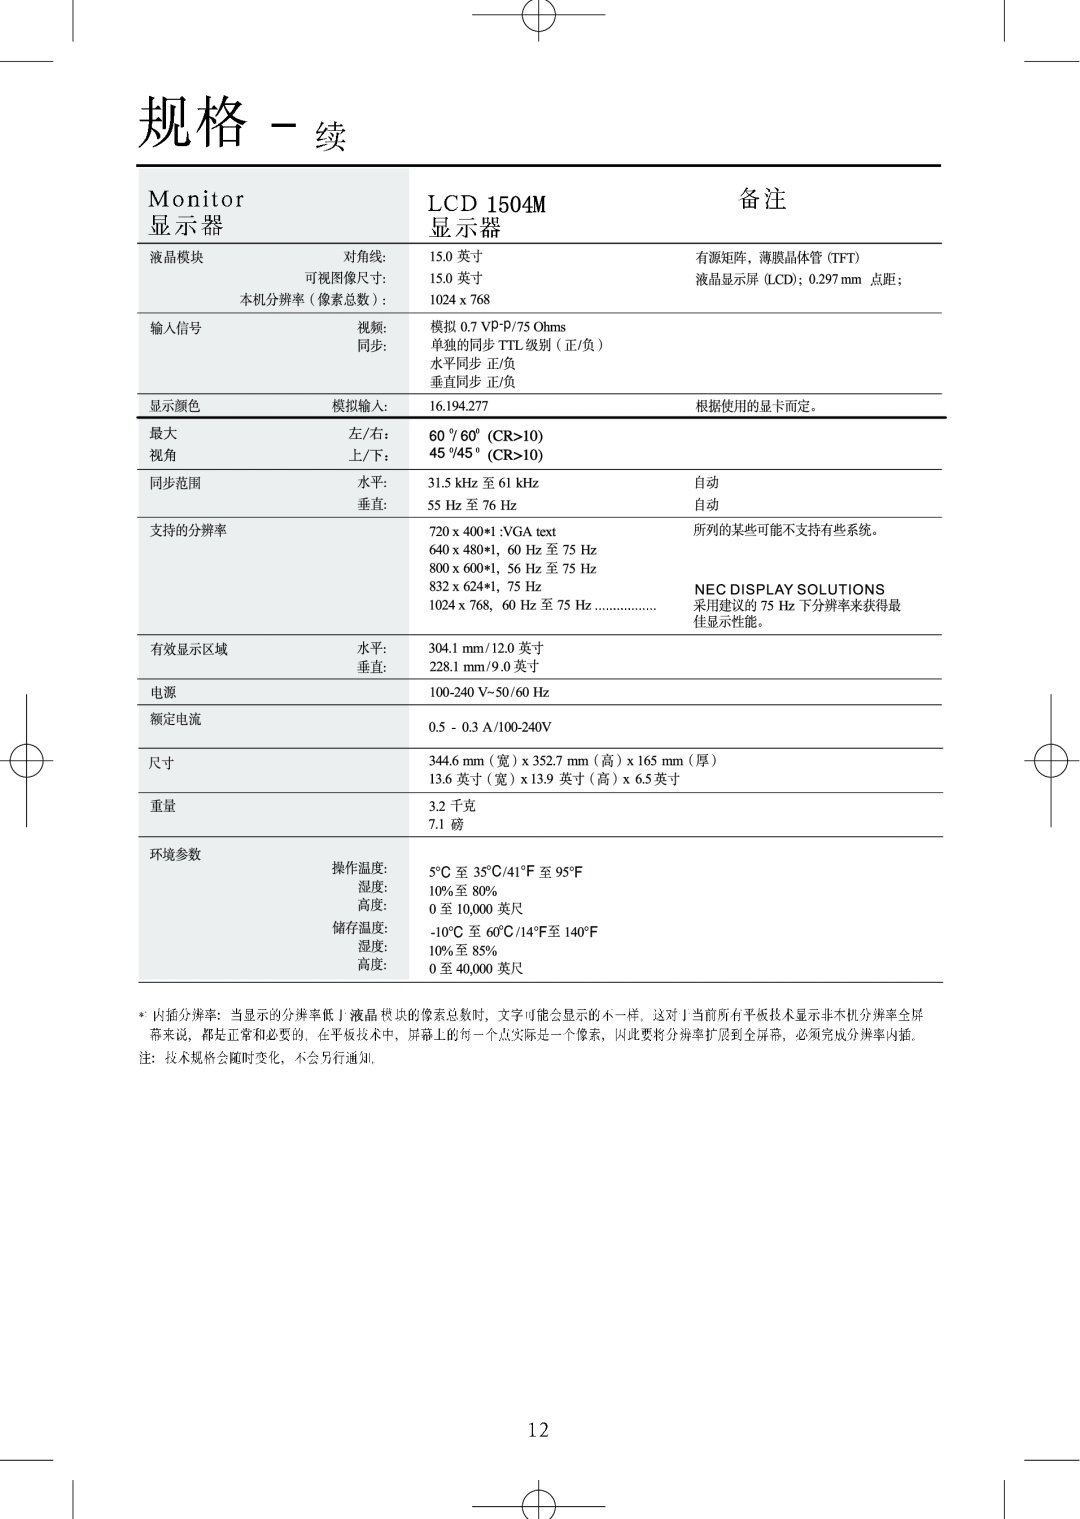 NEC LCD1504M, LCD1904M, LCD1704M manual 104M, 左/右：, 上/下： 